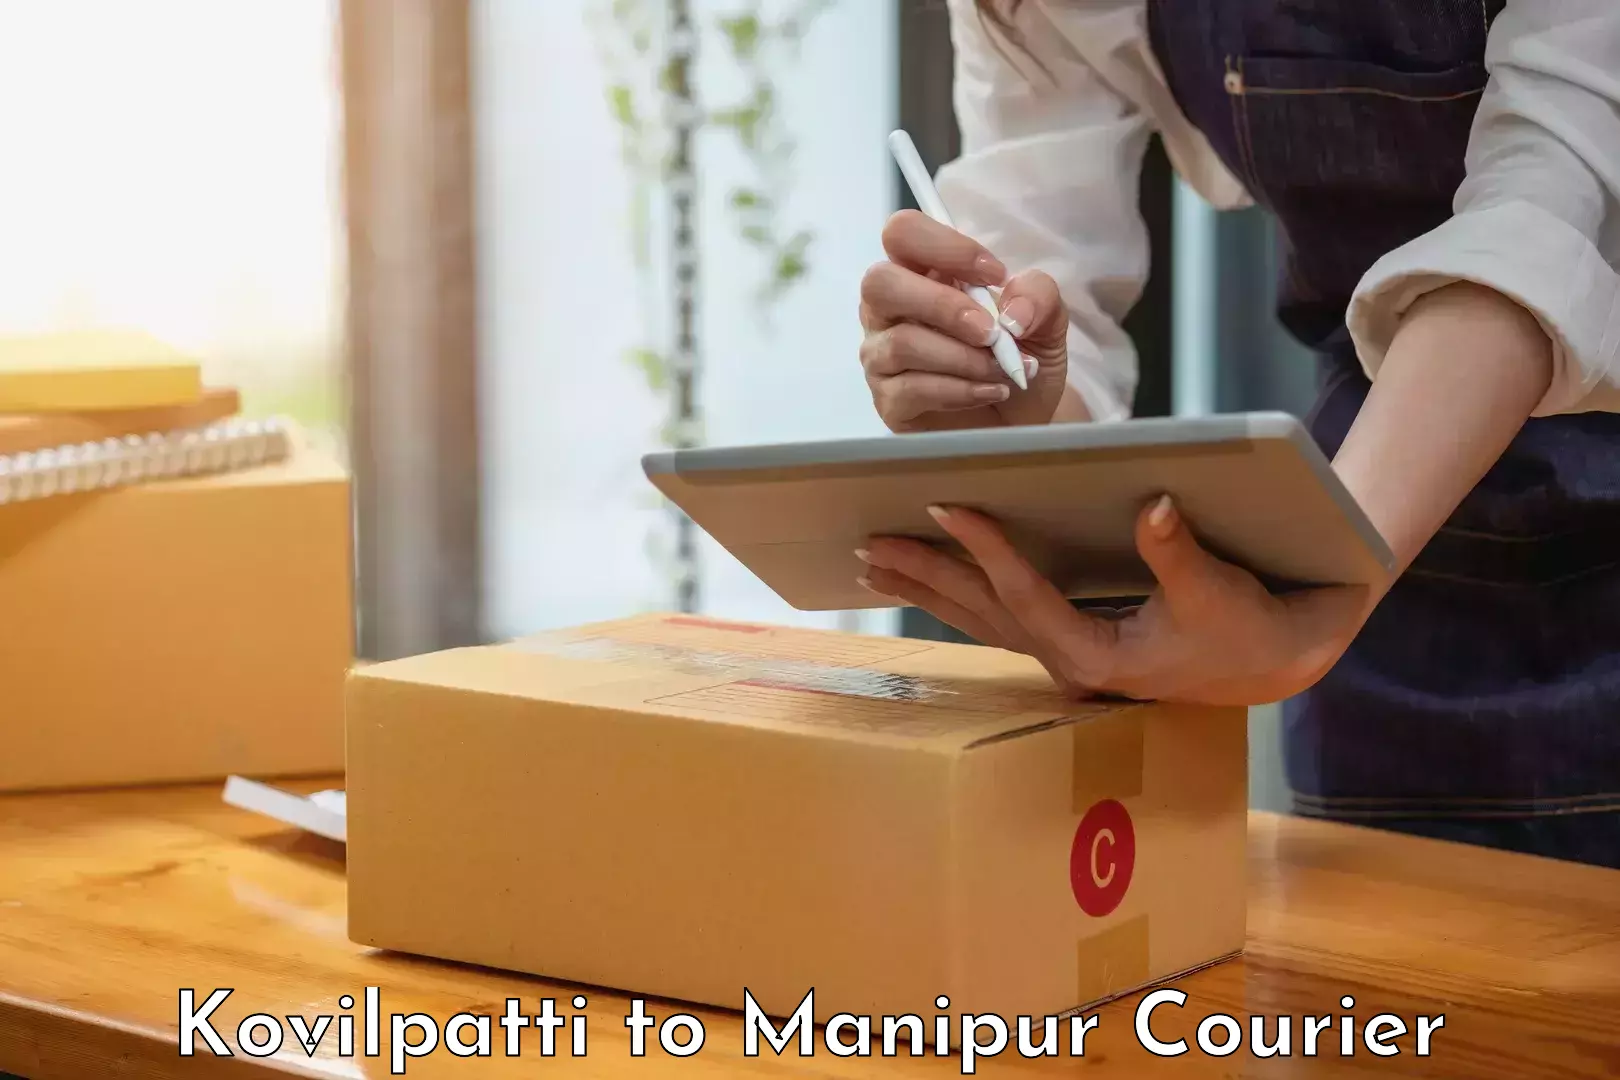 Modern courier technology Kovilpatti to Ukhrul